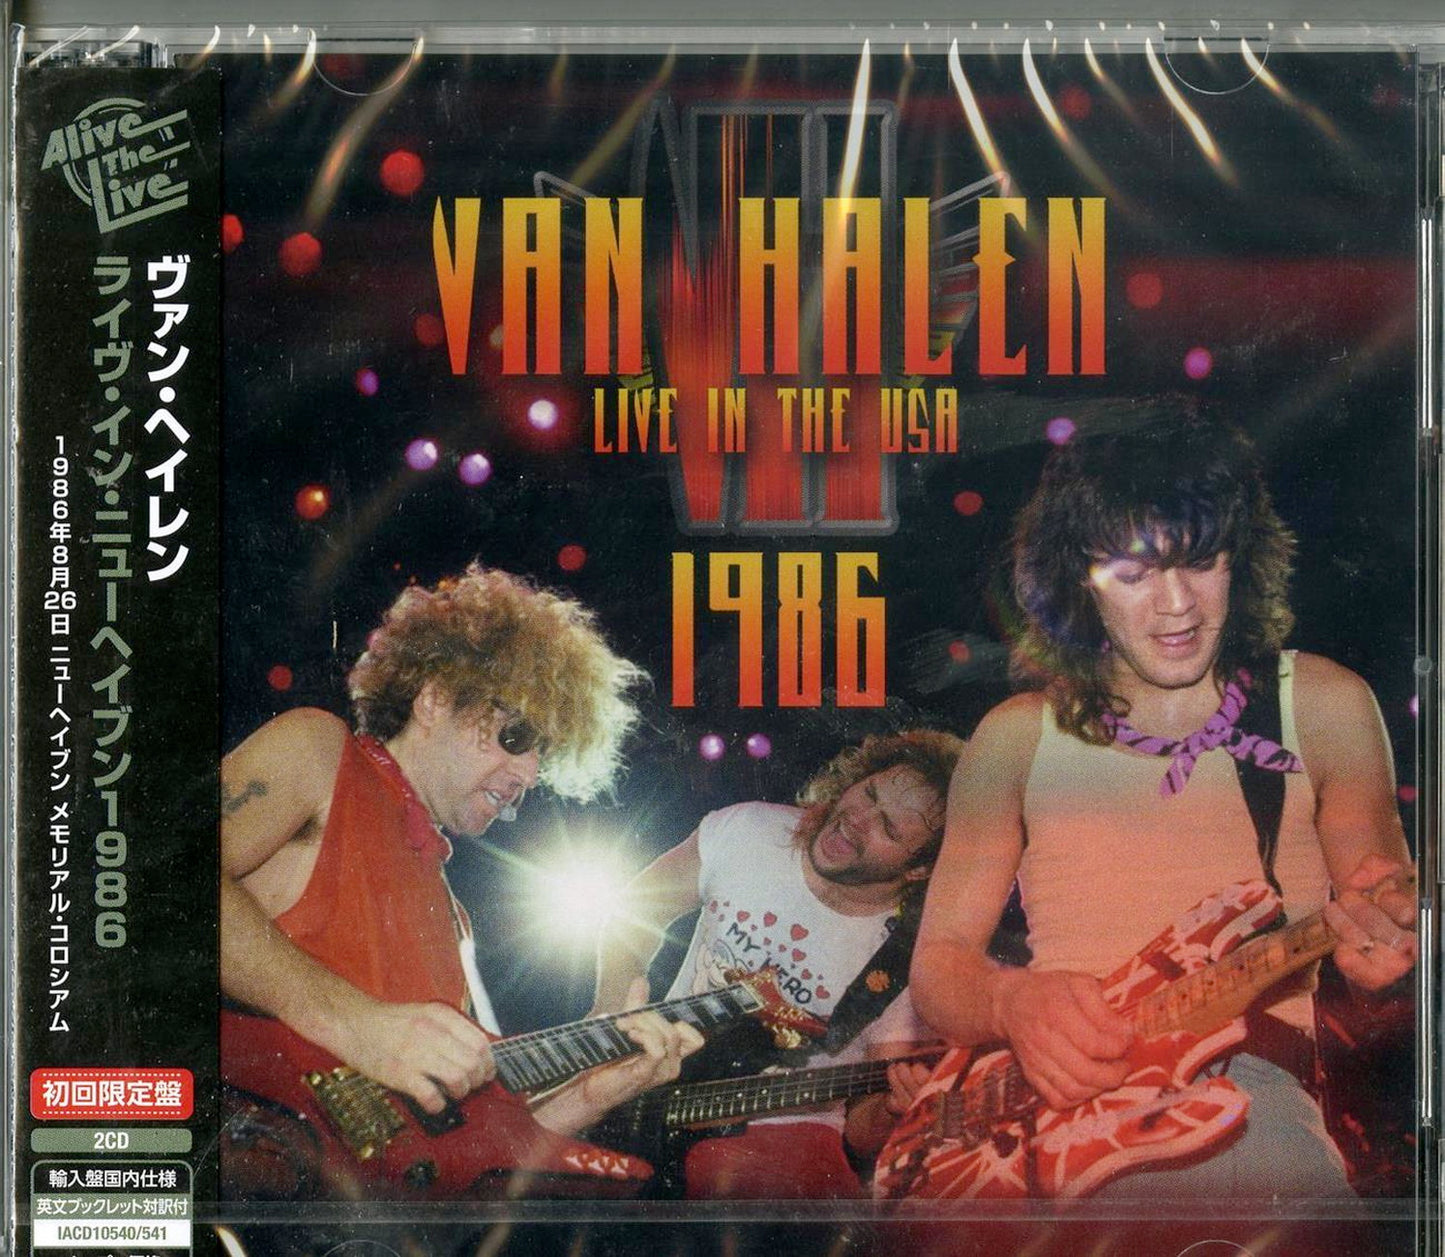 Van Halen - Live In The Usa 1986 - Import 2 CD